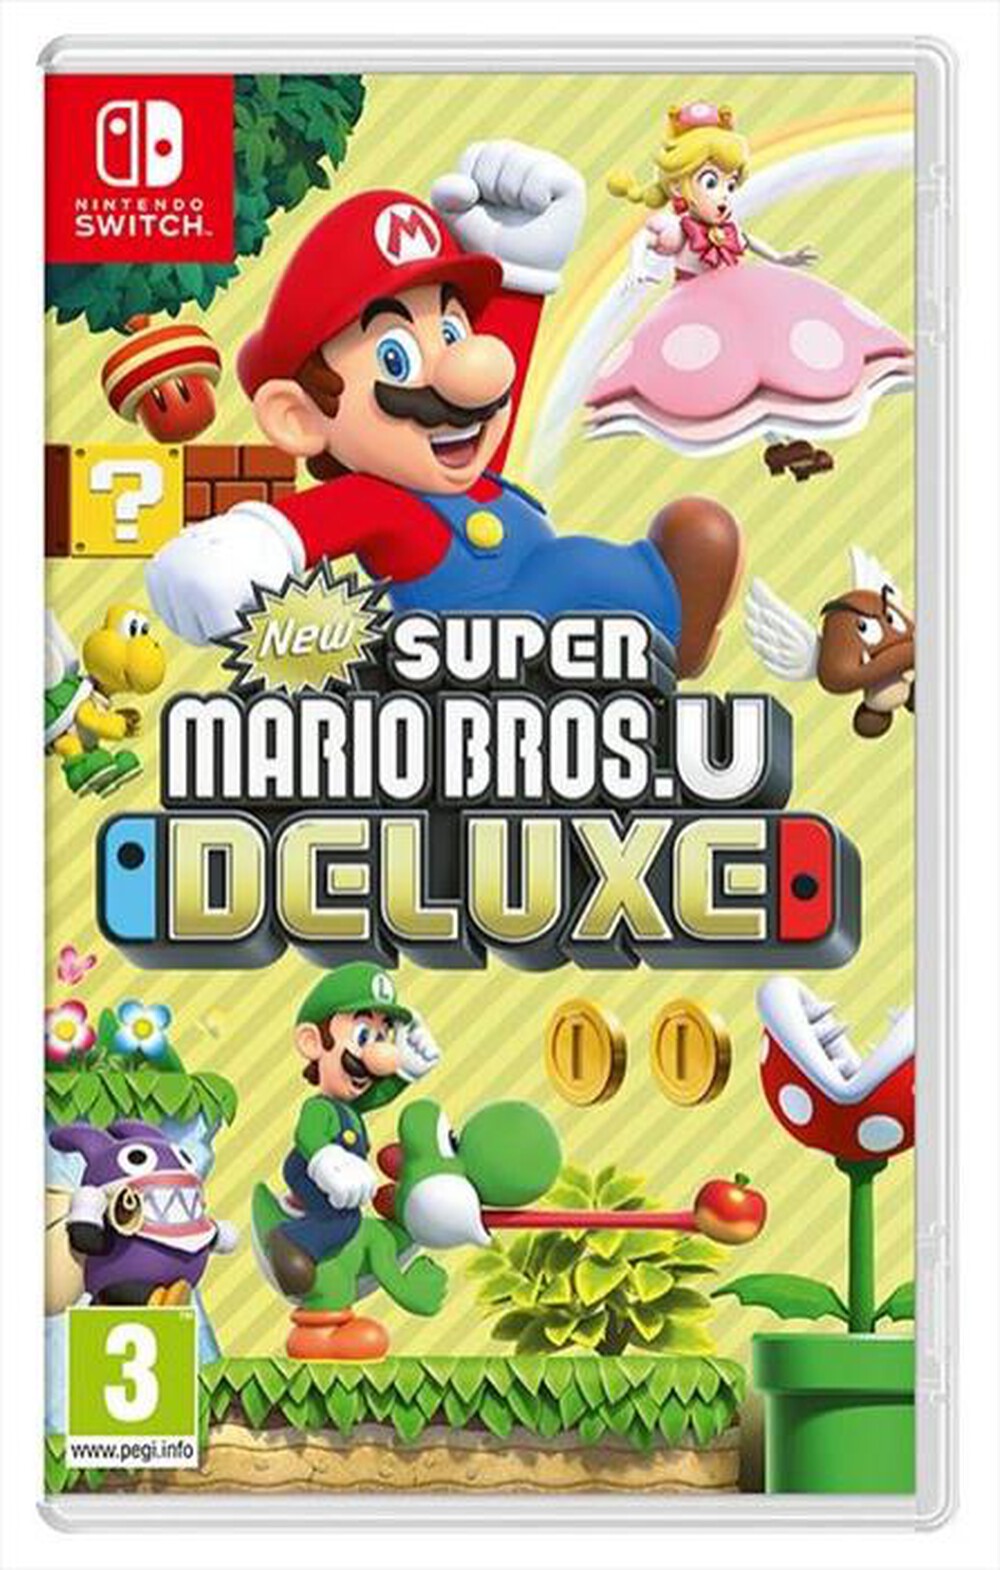 "NINTENDO - New Super Mario Bros. U Deluxe"